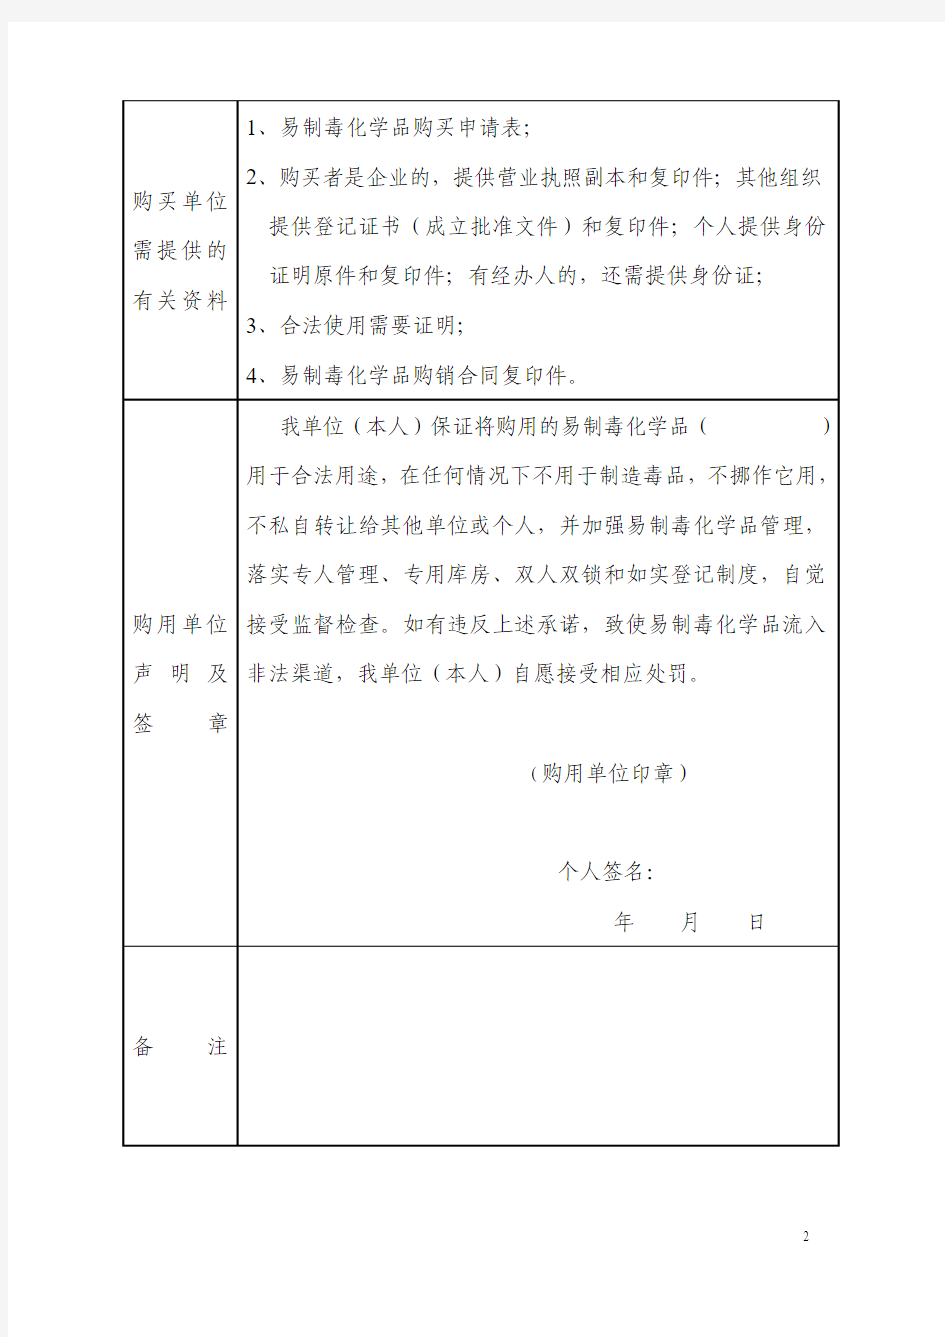 易制毒化学品购买凭证申请表 - 江苏省人民政府